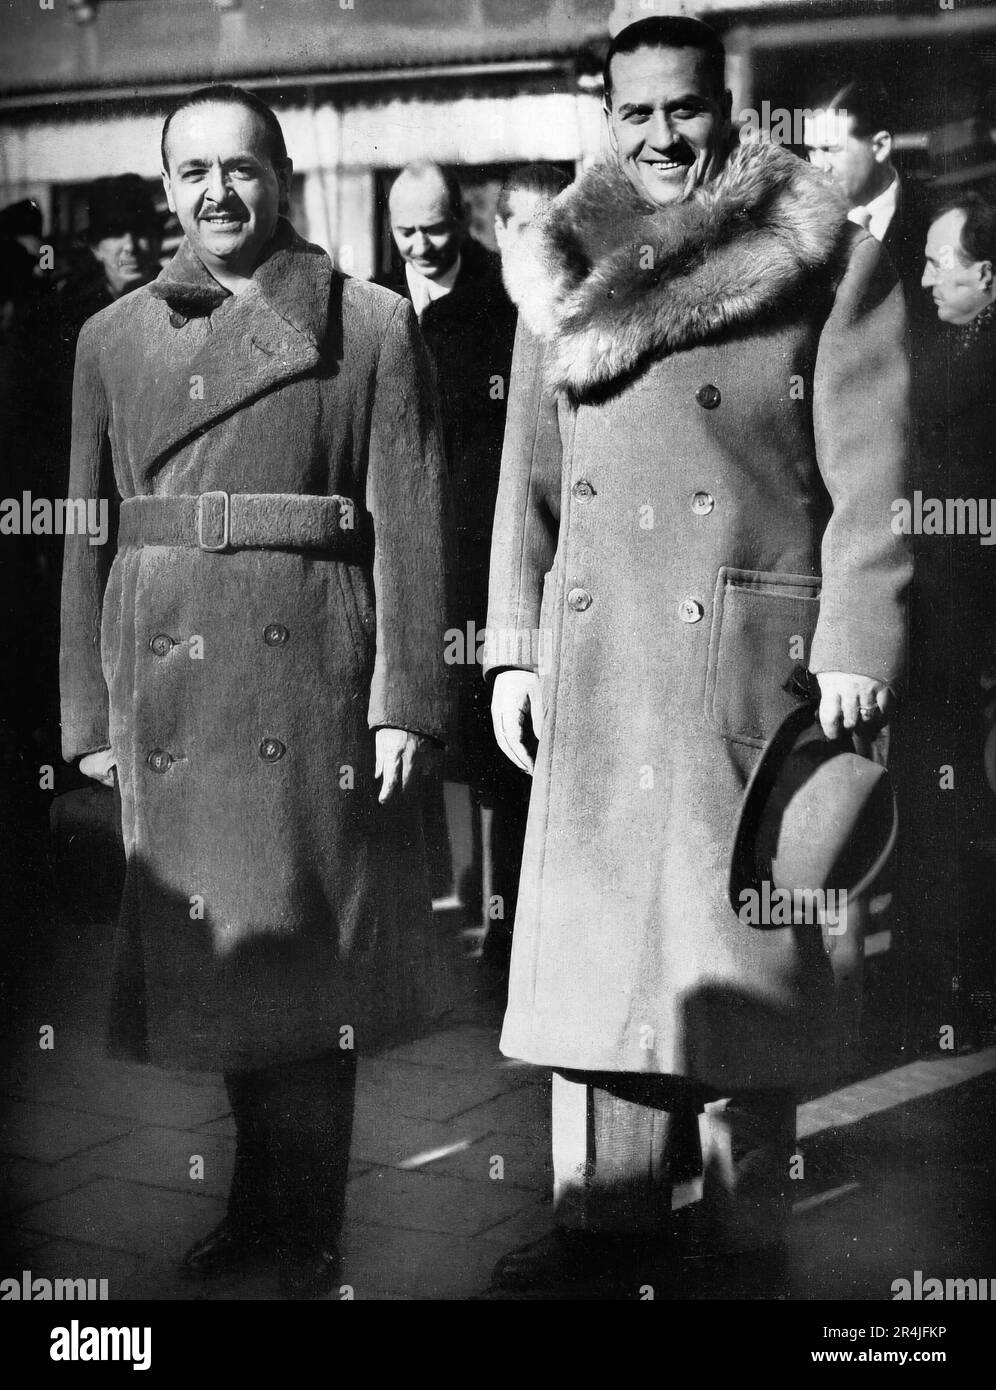 Gian Galeazzo ciano, uomo politico italiano, figura importante del regime fascista italiano, nel 1930 sposò Edda, figlia di Mussolini. Foto Stock